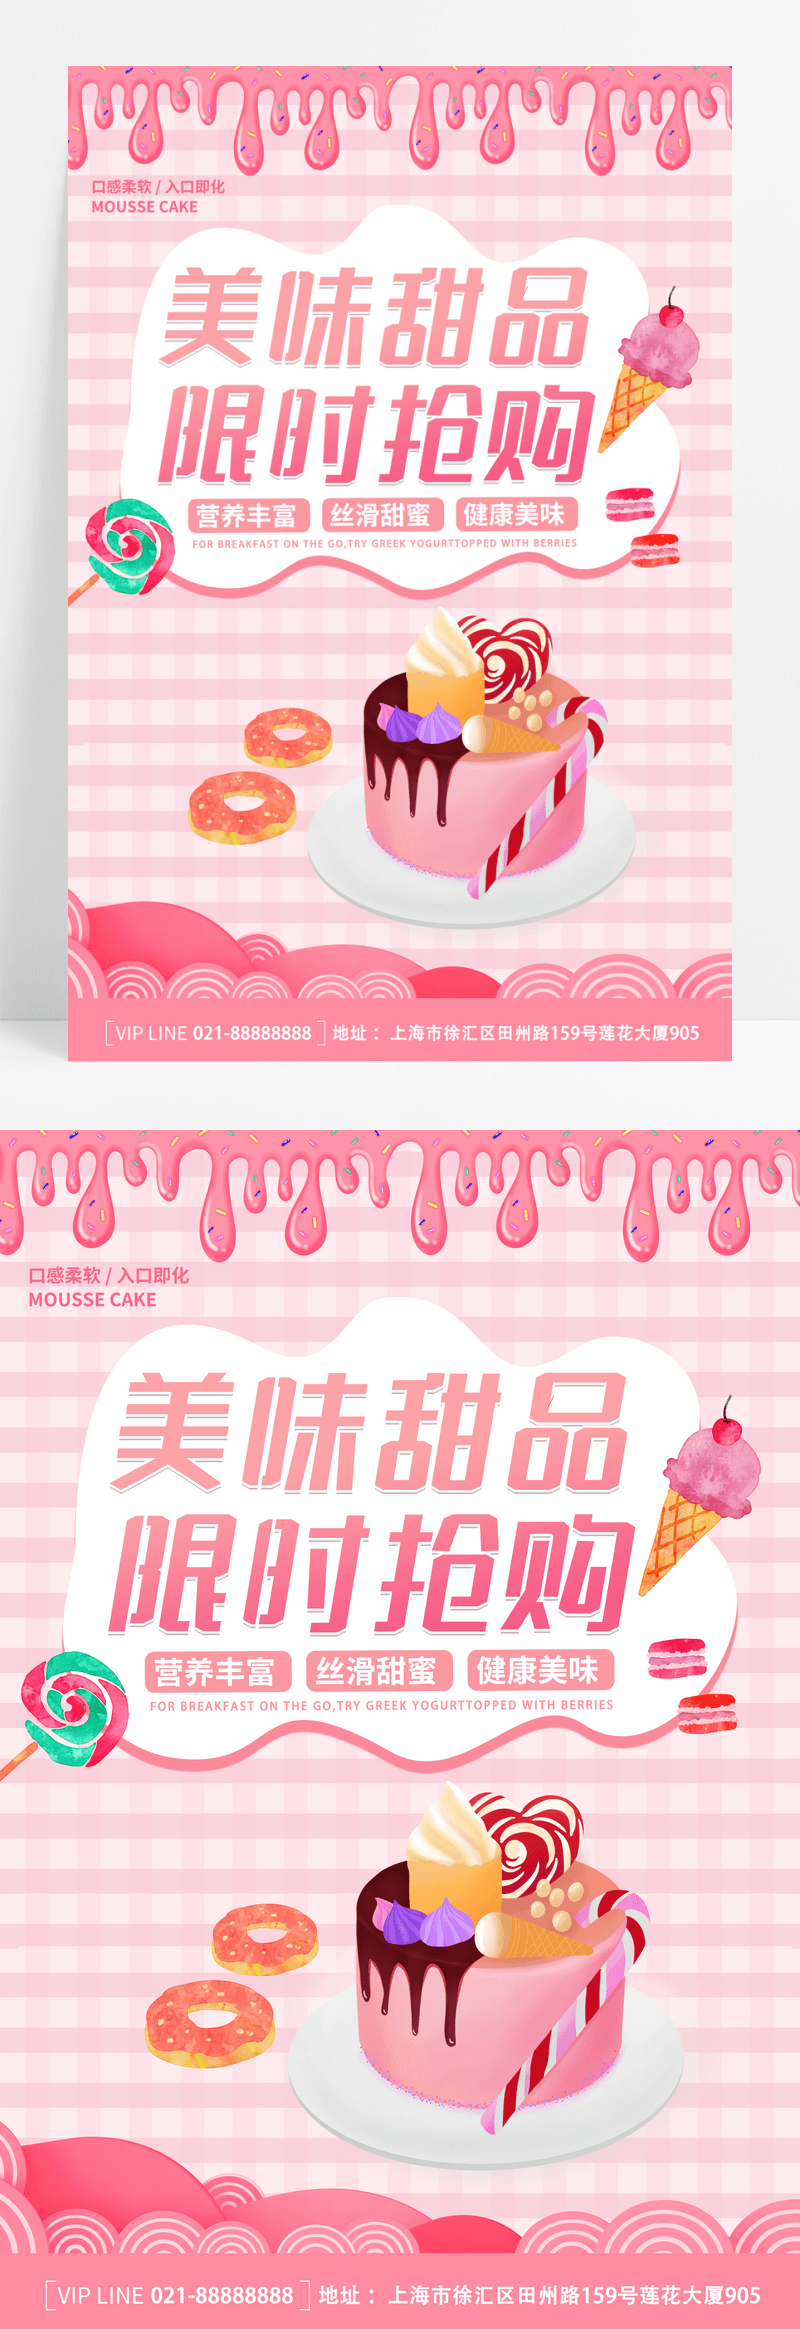 卡通简约粉色创意大气甜品宣传海报美食甜品海报设计